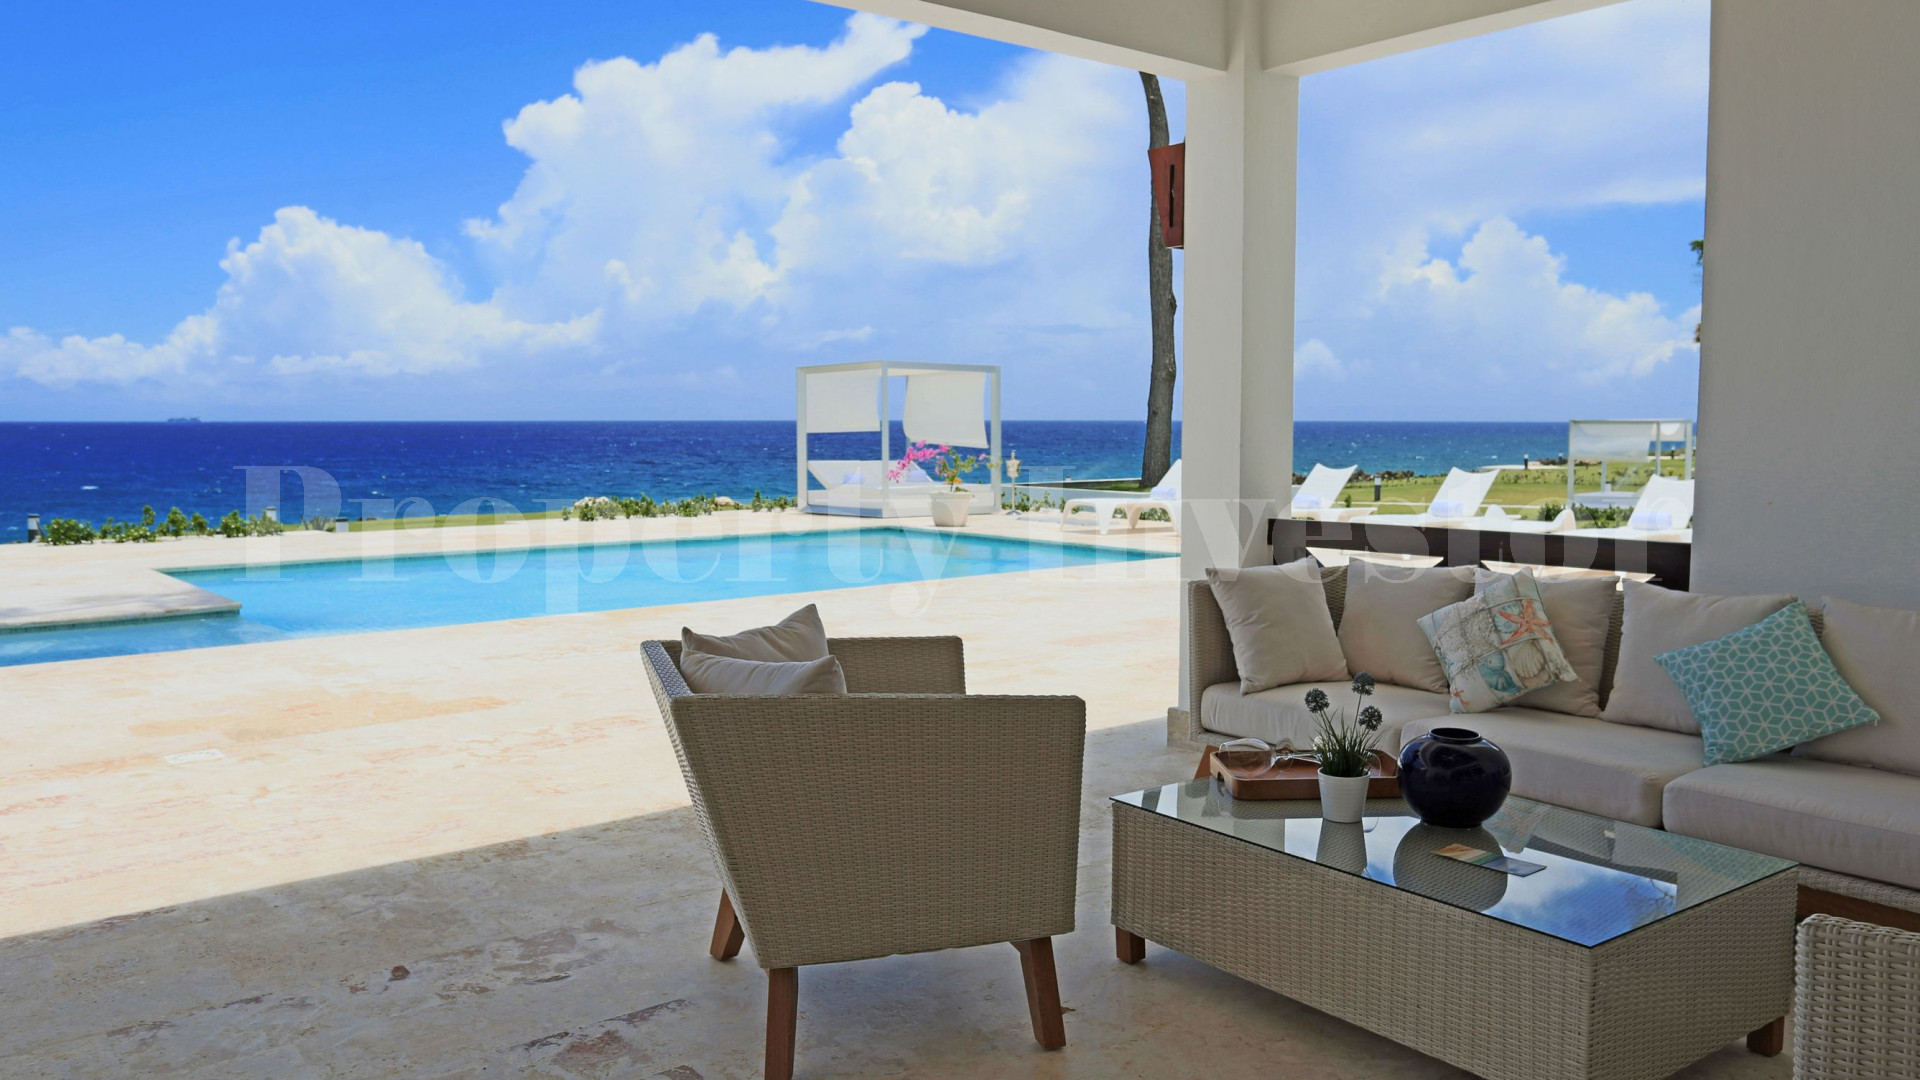 Вилла с 3 спальнями на берегу моря в Доминиканской Республике с финансирование на 30 лет (Вилла 2)